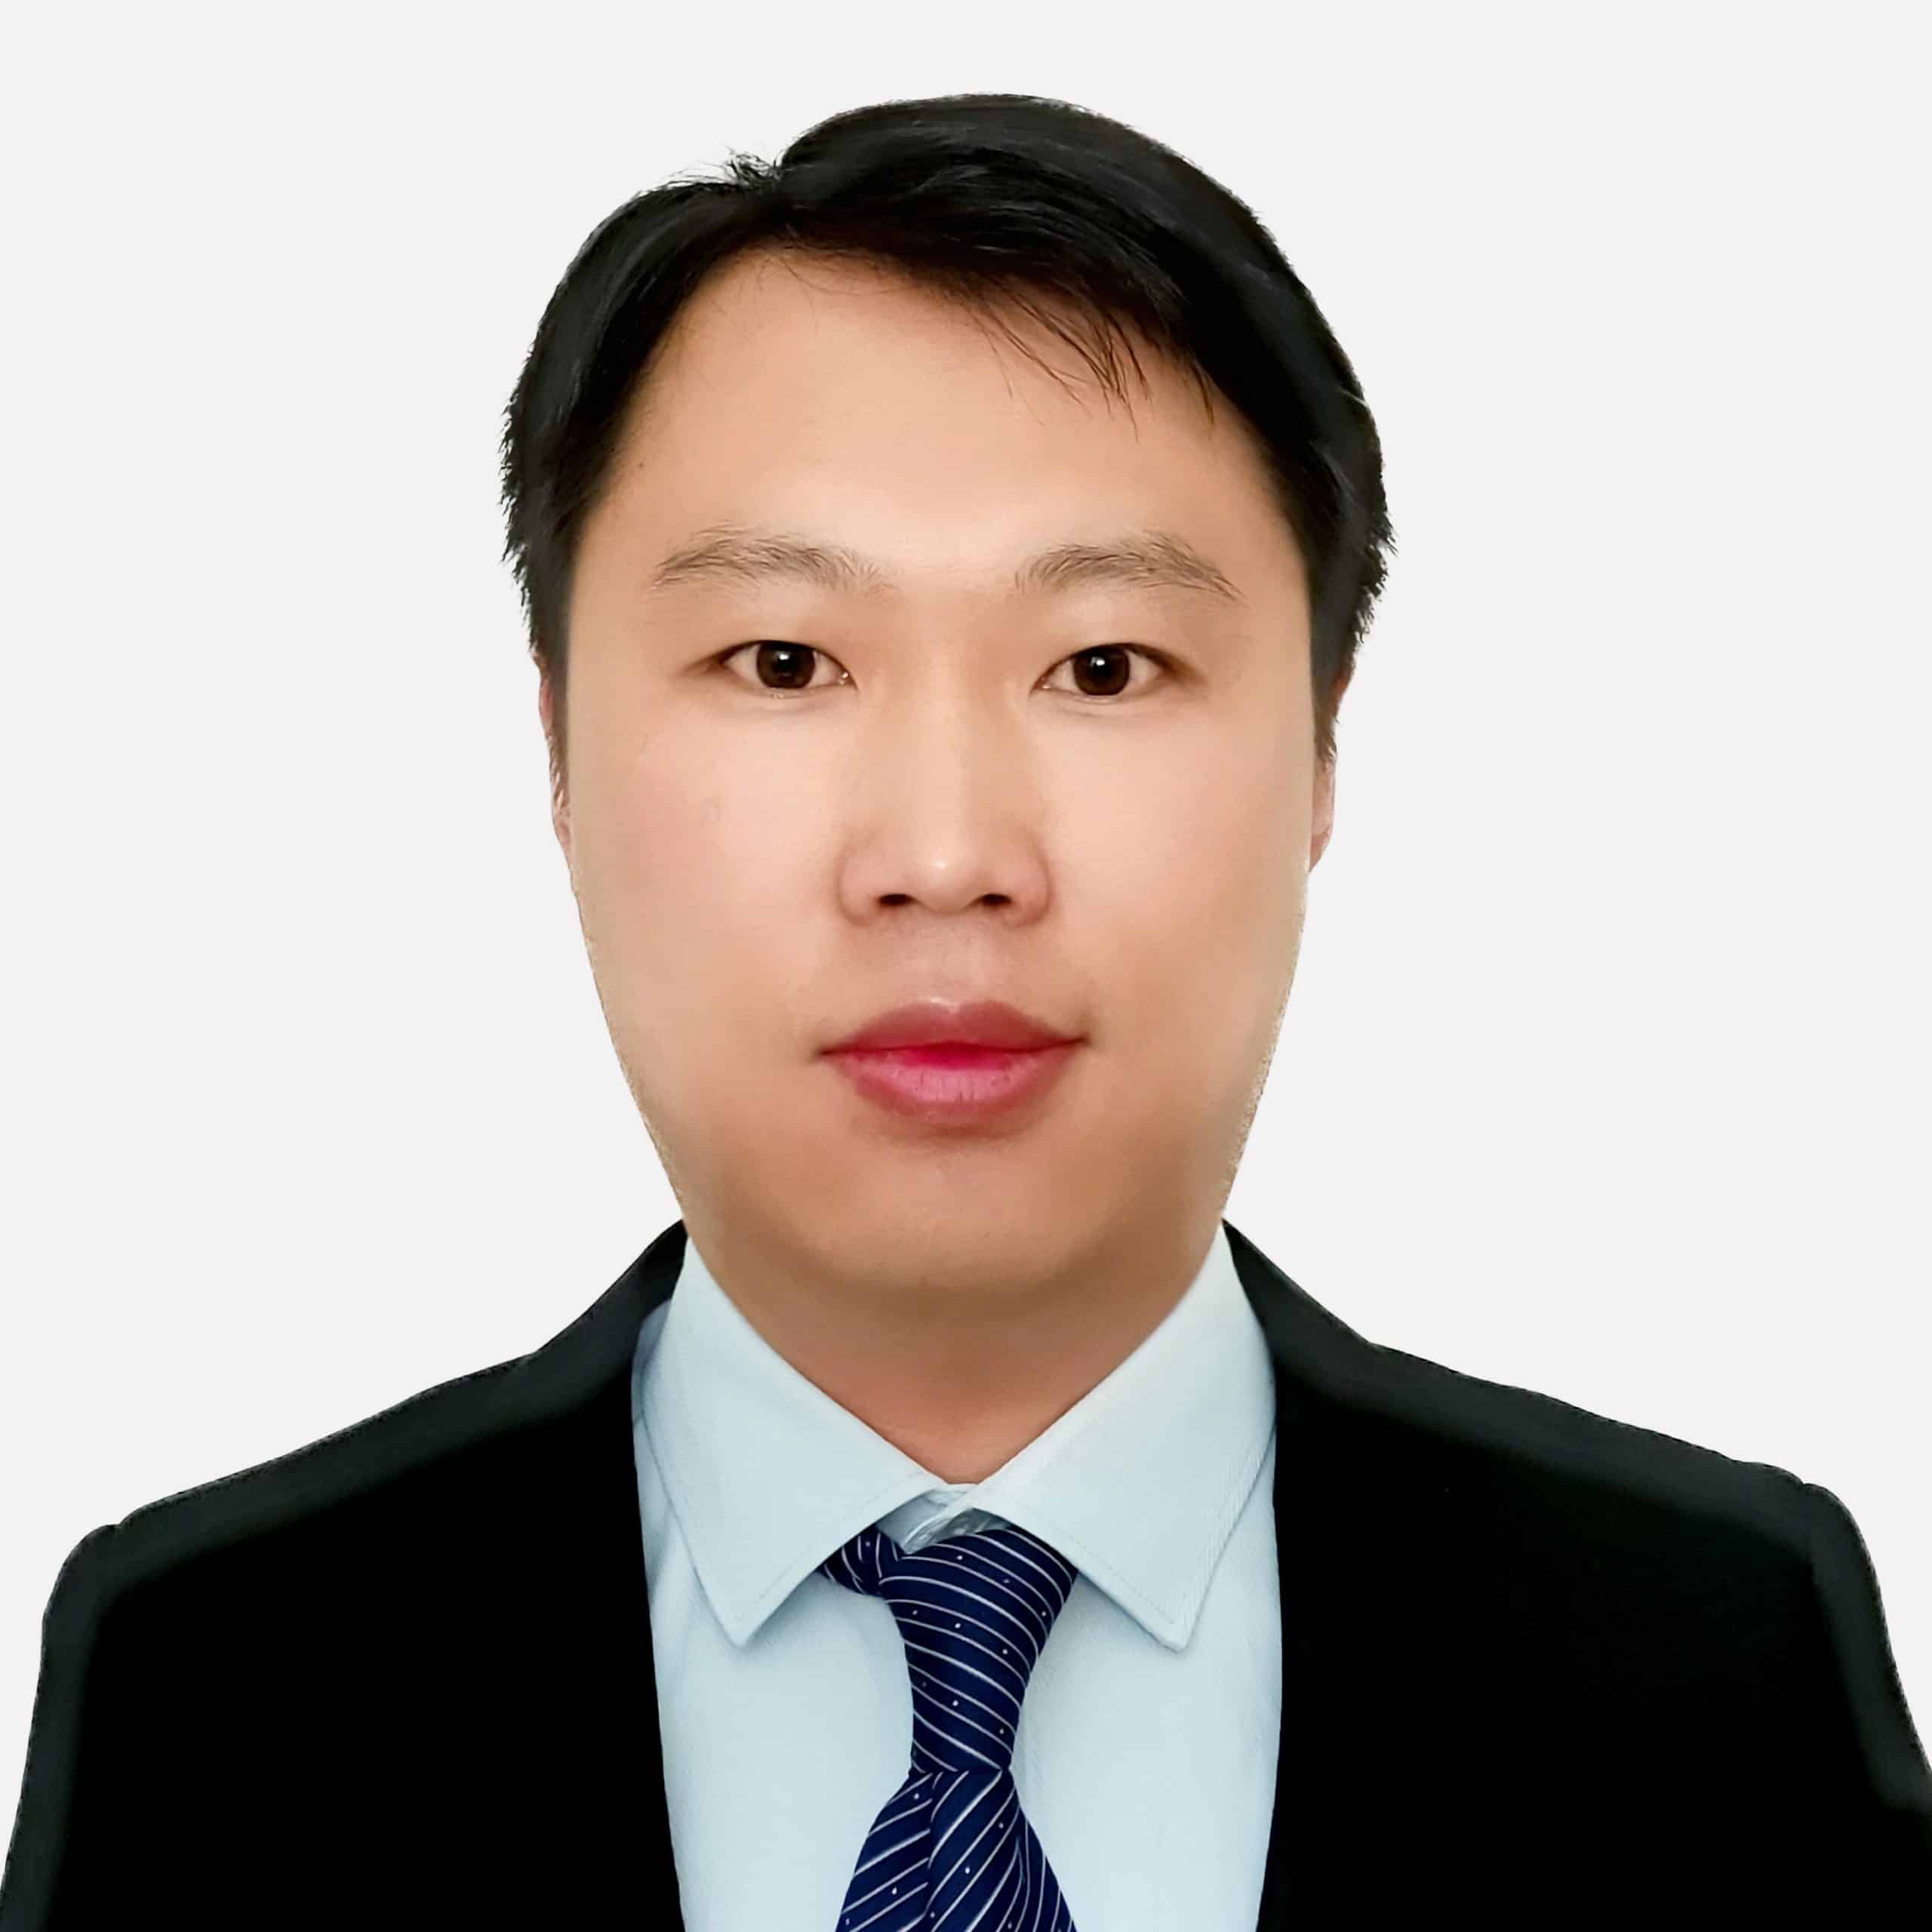 Dr Gao Jian